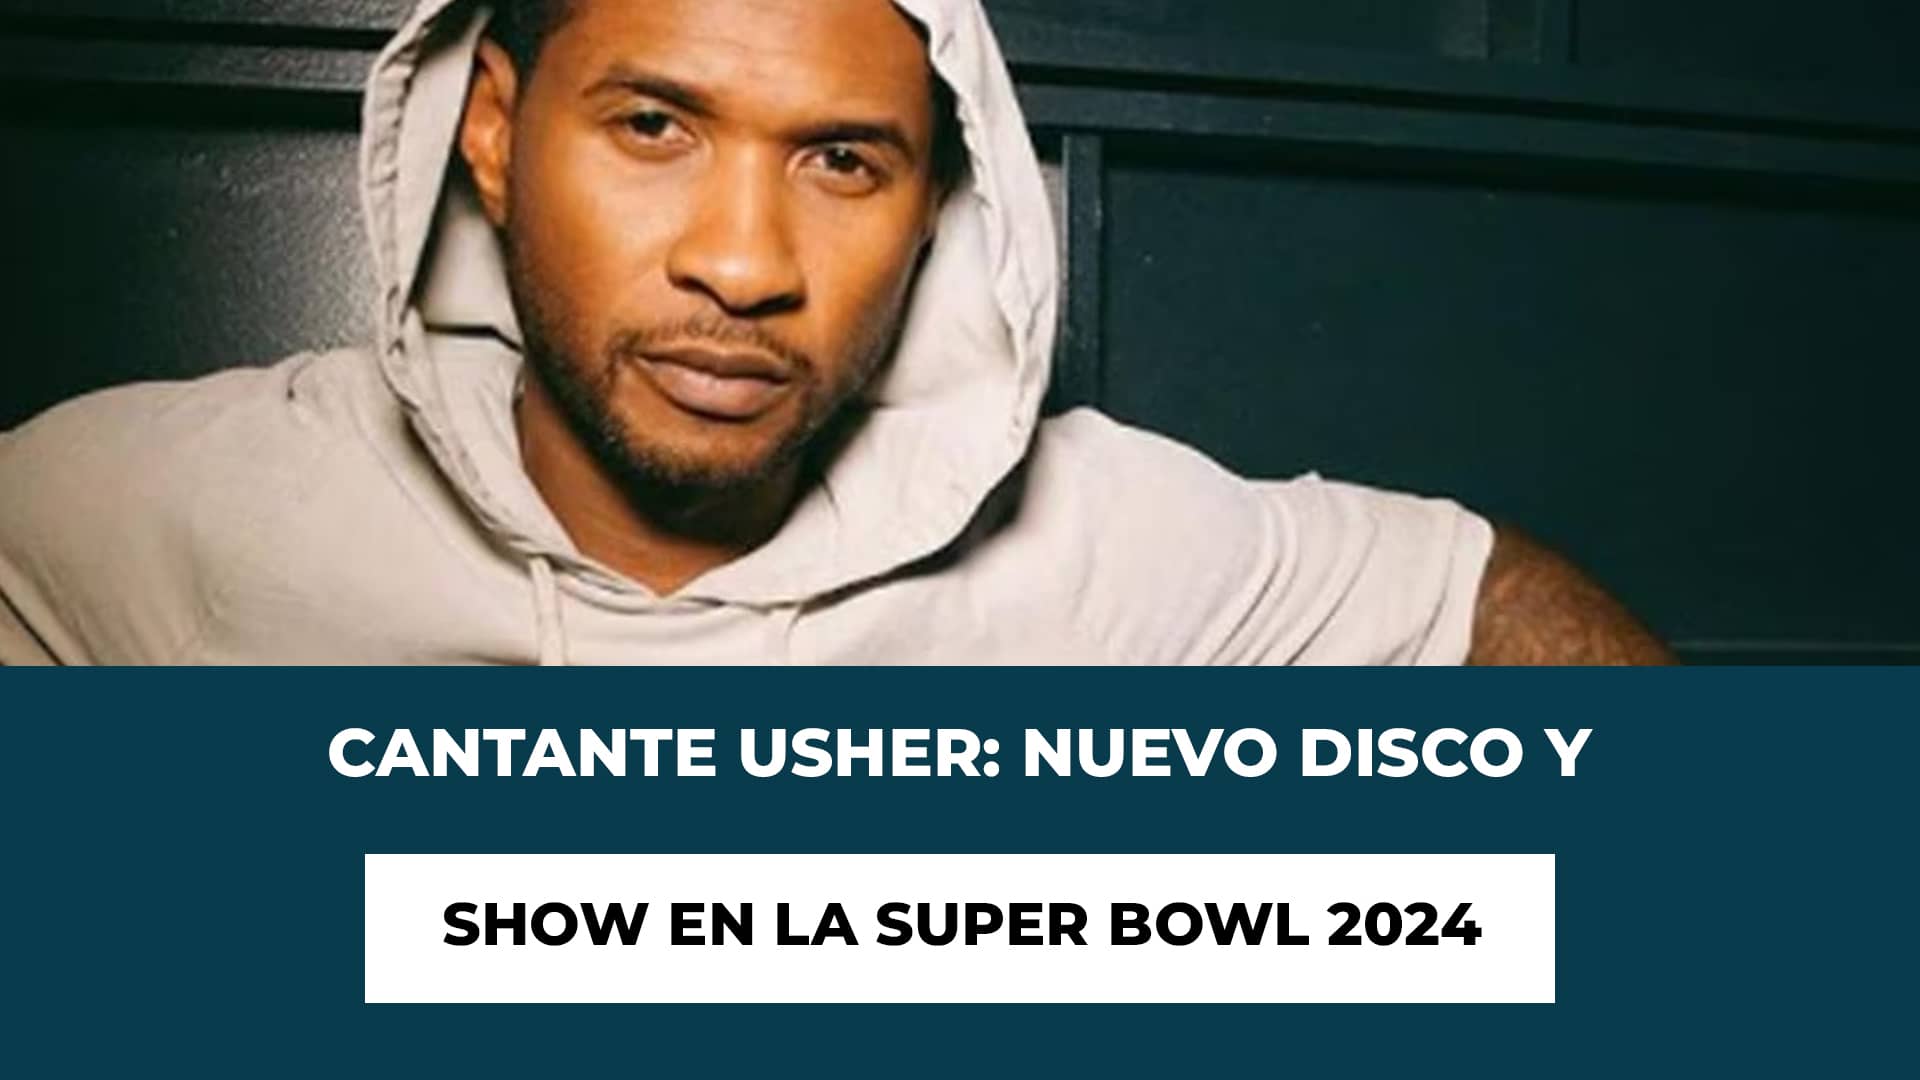 Cantante Usher: Nuevo disco y Show en la Super Bowl 2024 - Explora cuando saldrá su disco y será su nuevo concierto